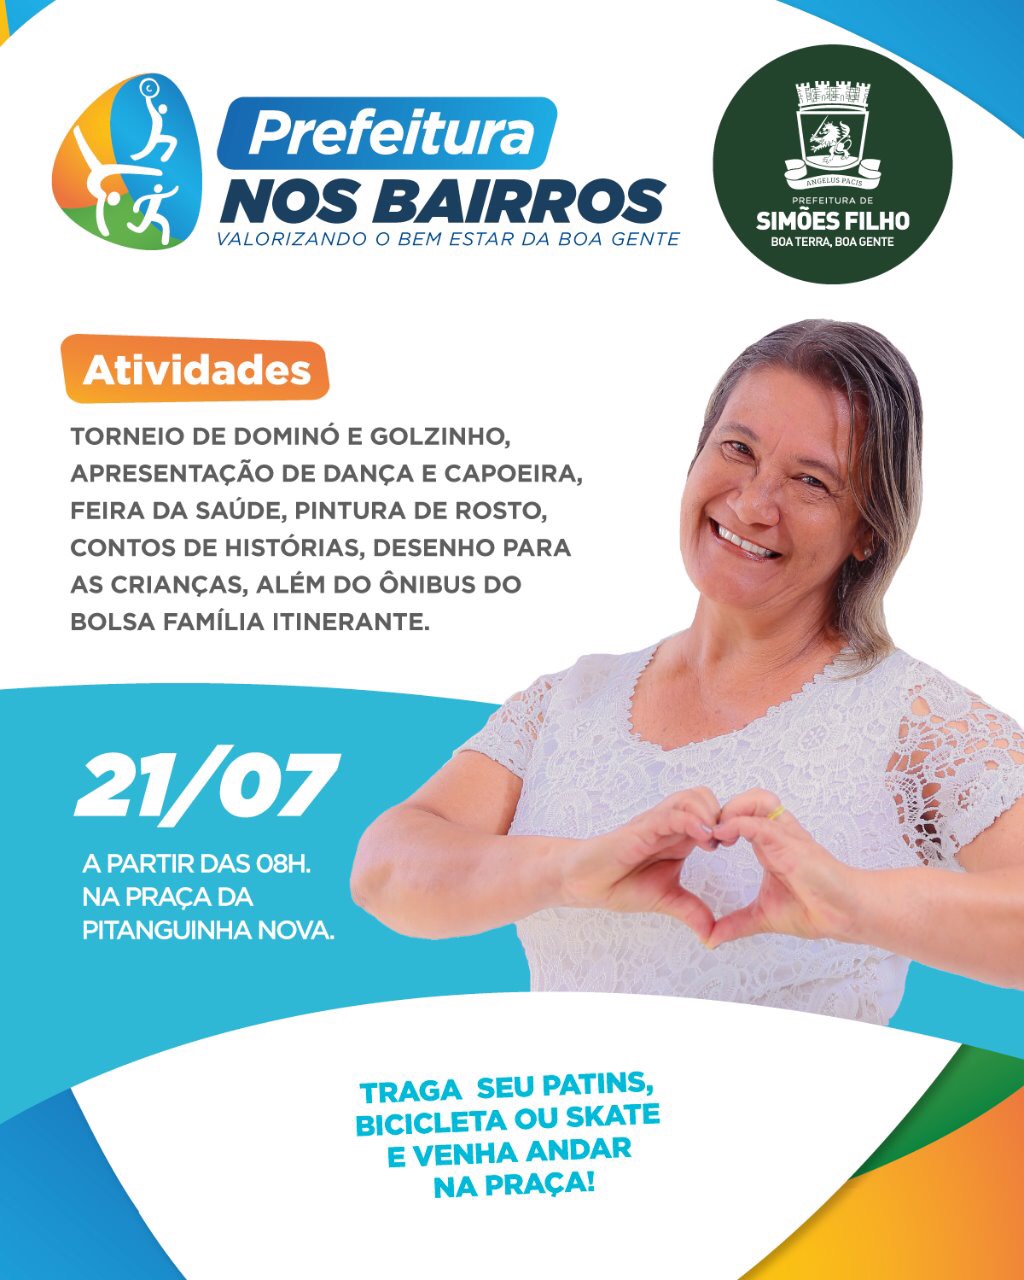 Simões Filho: Projeto Prefeitura nos Bairros leva serviços à Pitanguinha neste domingo (21)